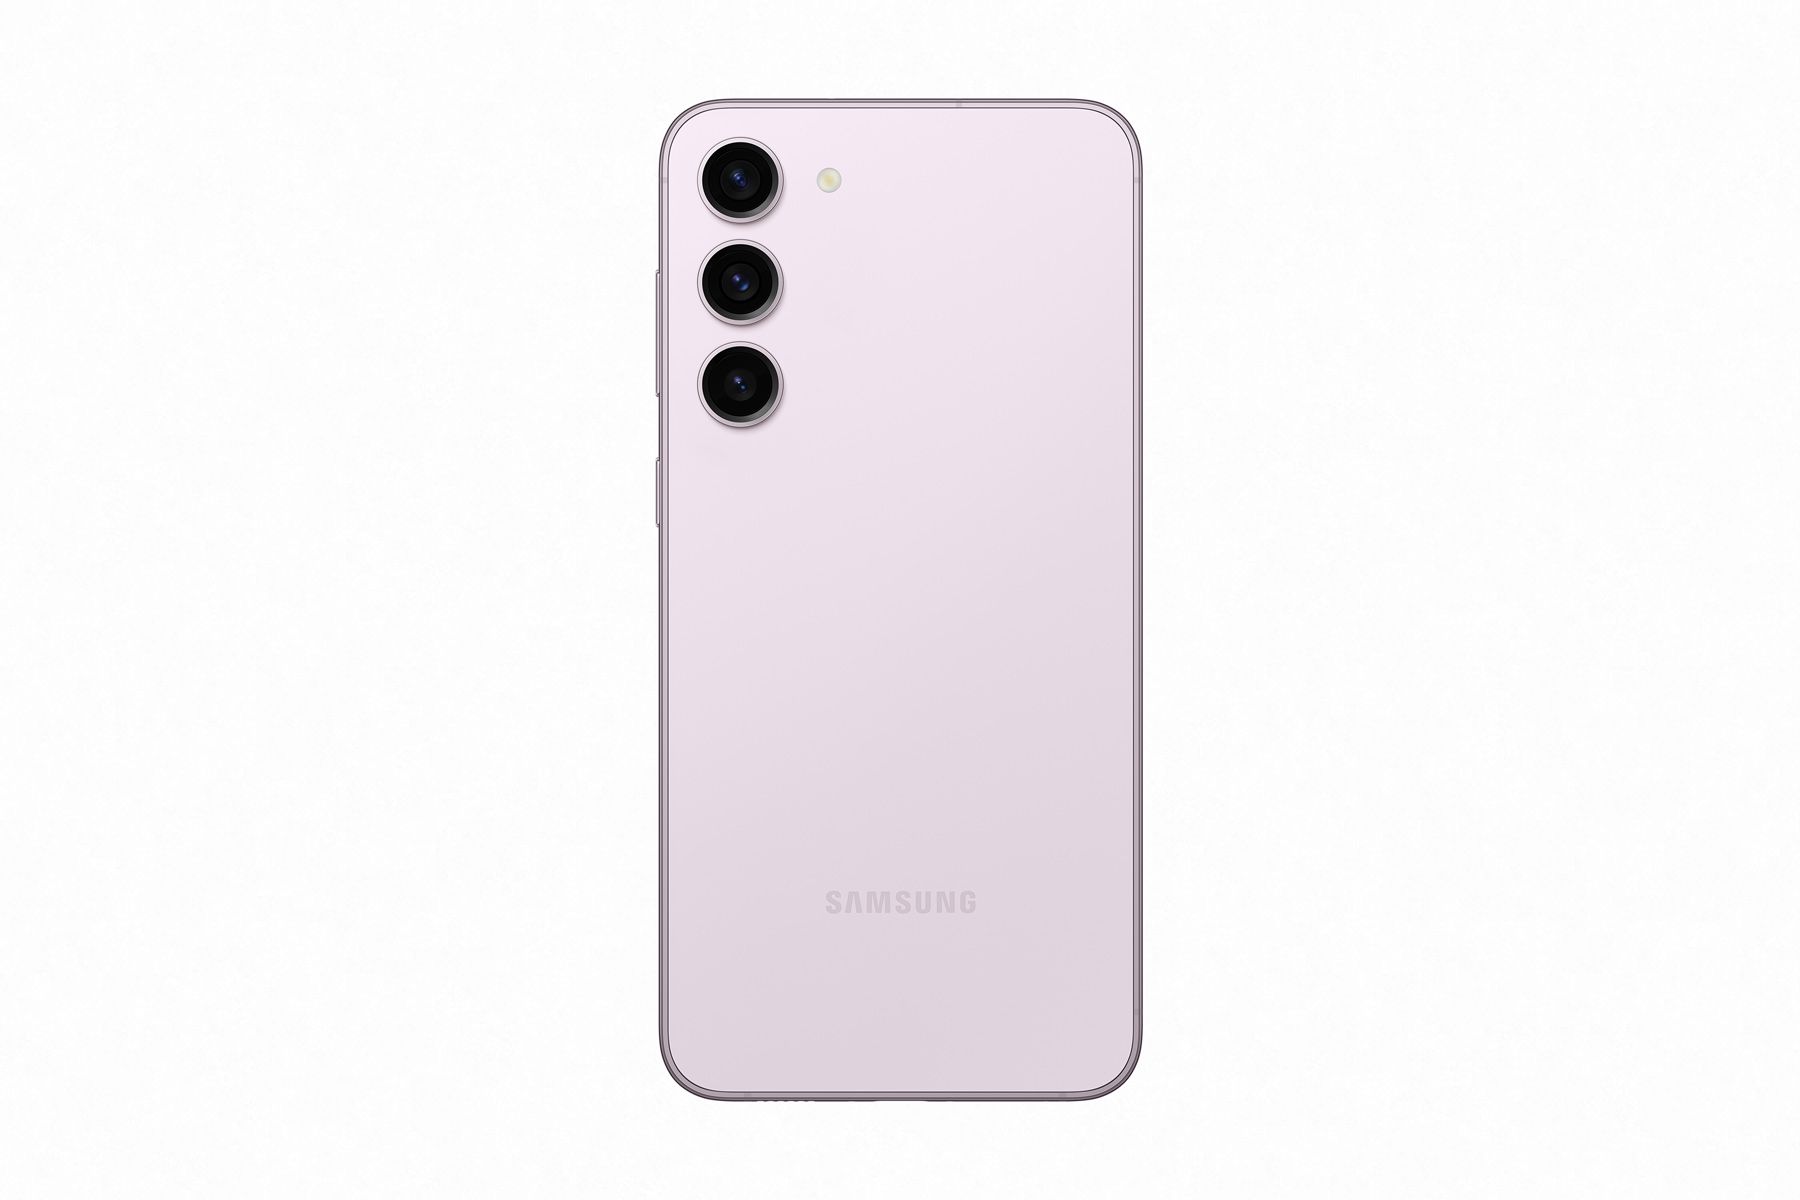 เทียบสเปค Samsung Galaxy S23, S23+, S23 Ultra ต่างกันอย่างไร ซื้อรุ่นไหนดี